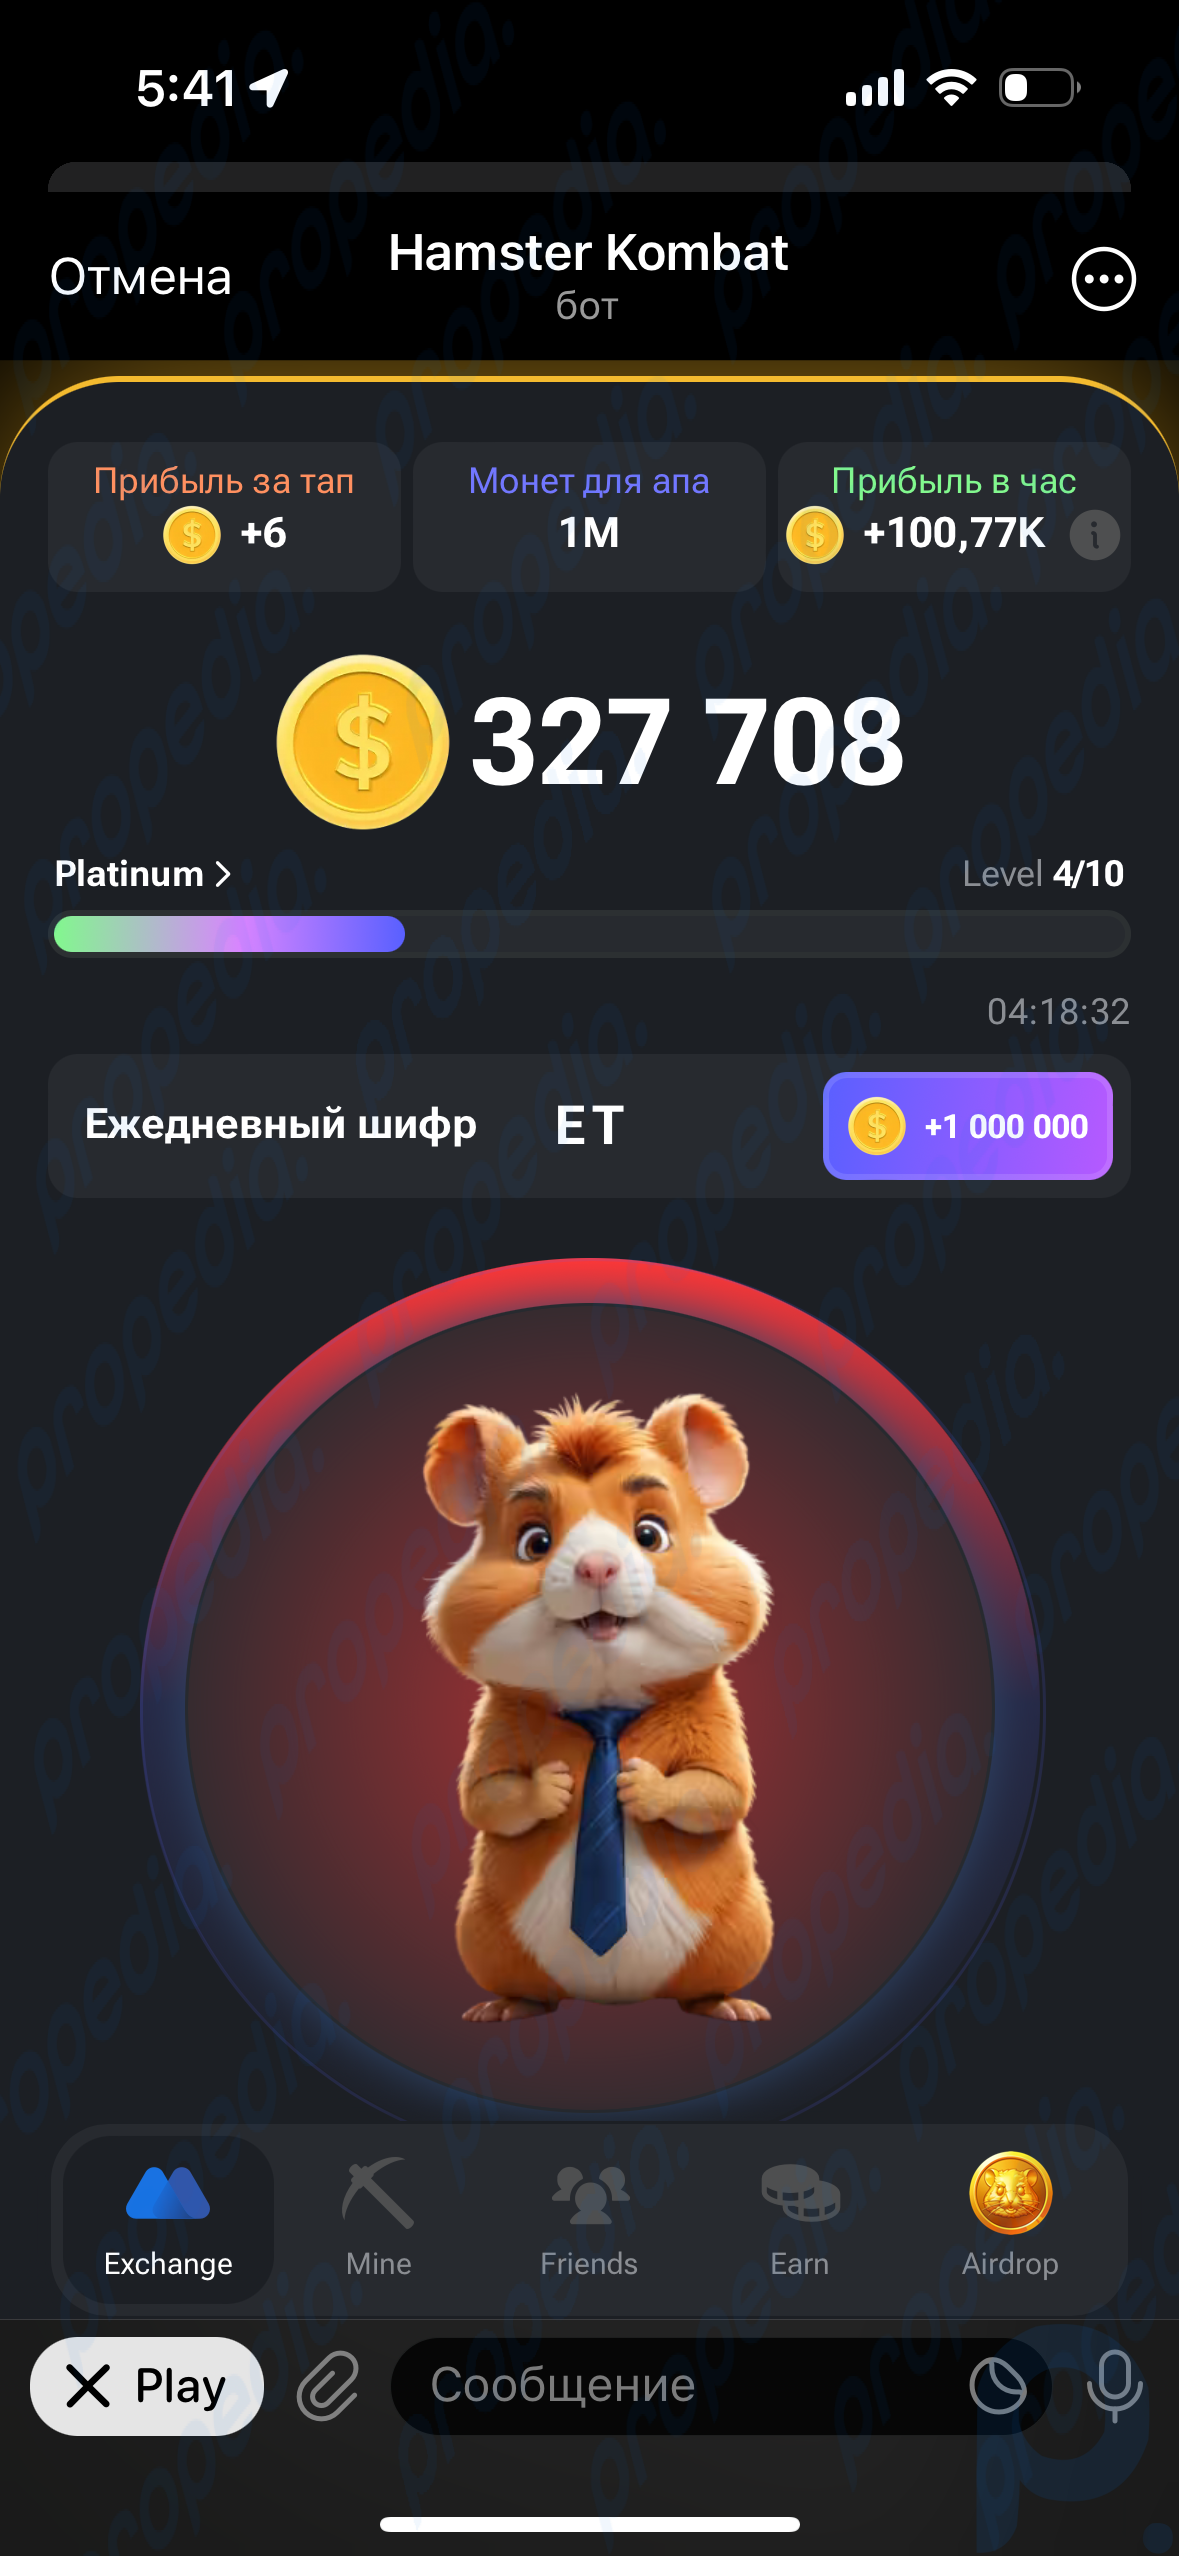 Hamster Kombat とは何ですか? 誰もが金持ちになることを望んでいる Telegram のゲームです。 